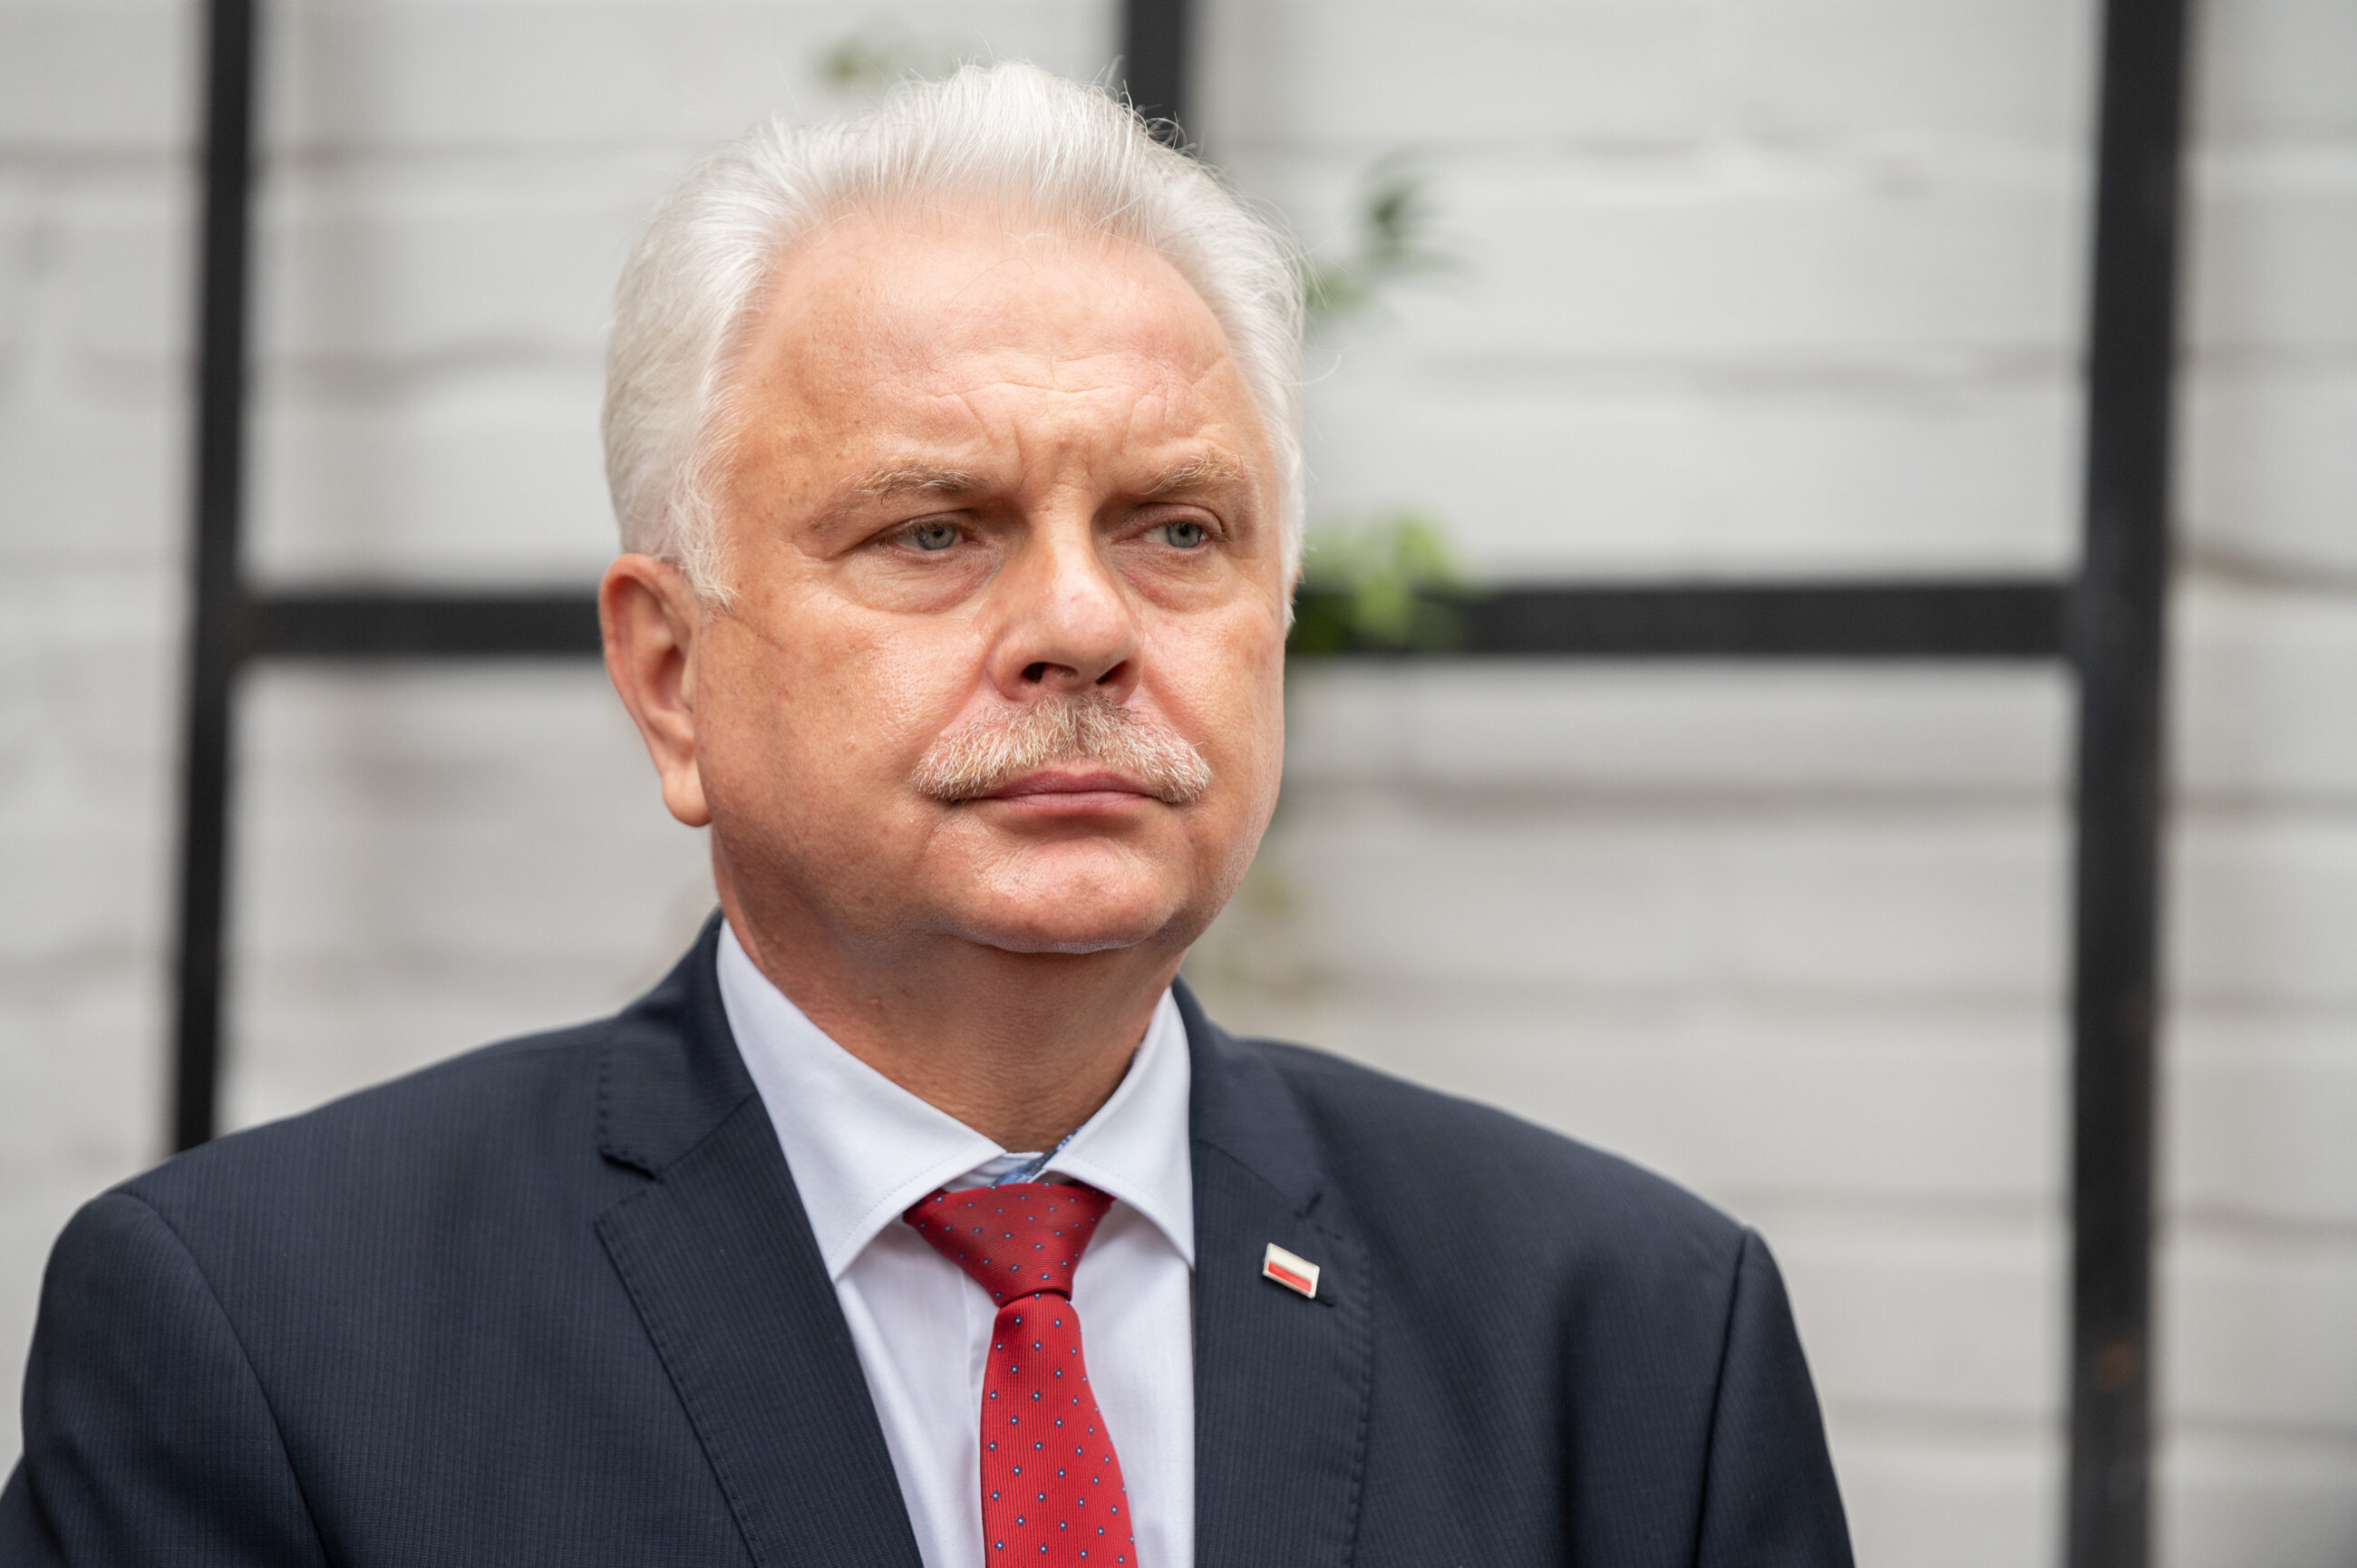 Koronawirus W Polsce Wiceminister Podał Nowe Dane Niepokojąca Tendencja Wprost 5064